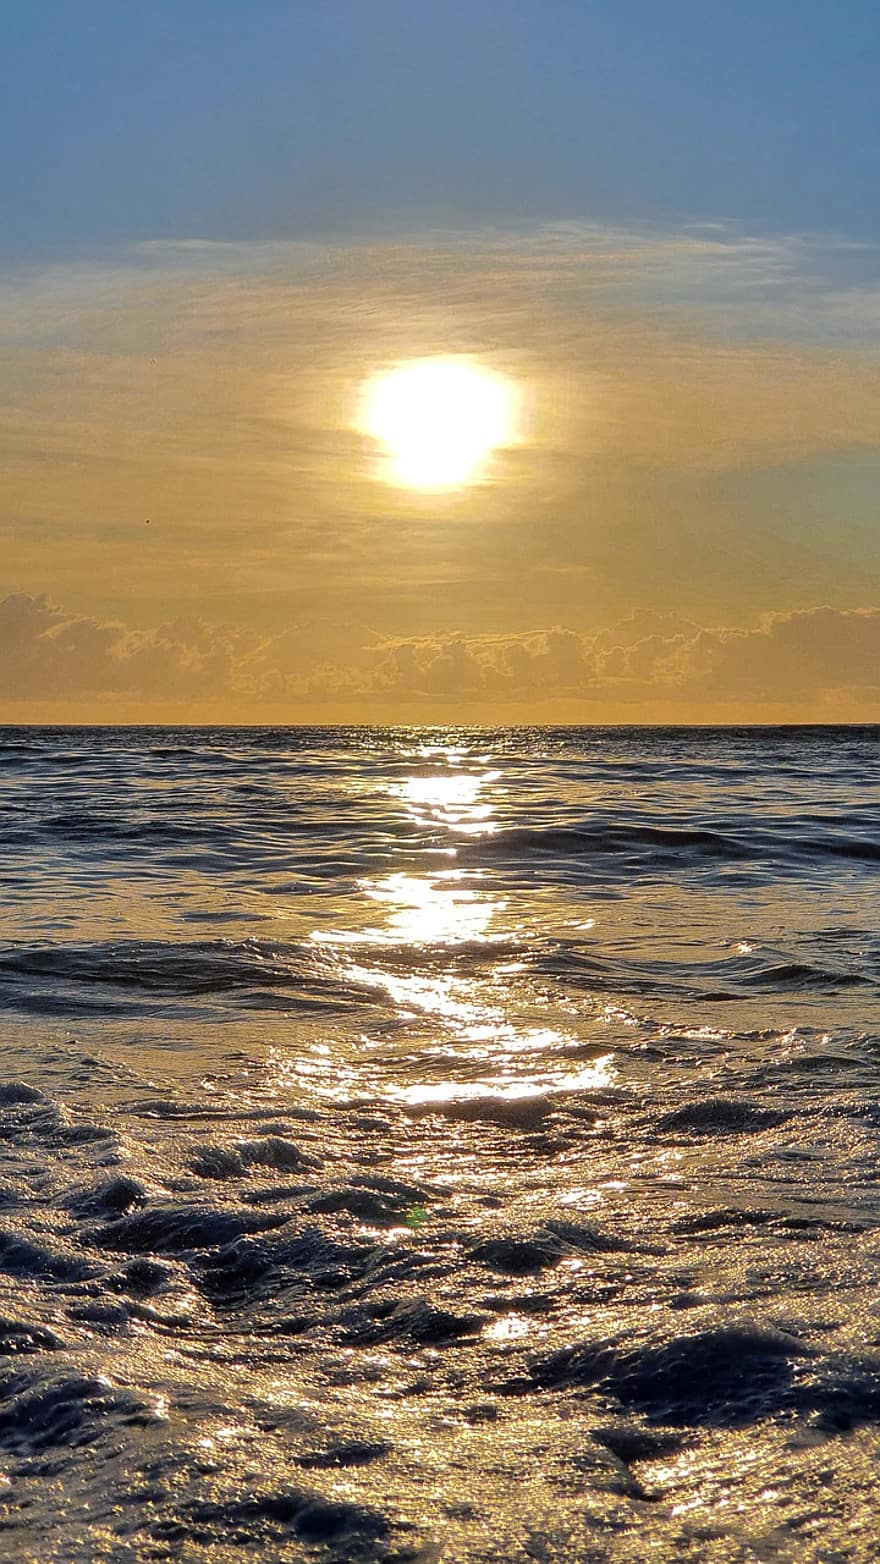 सूर्योदय, समुद्र, लहर की, सूर्य का अस्त होना, सागर, पानी, सीस्केप, प्रकृति, शांत, रवि, सूरज की रोशनी